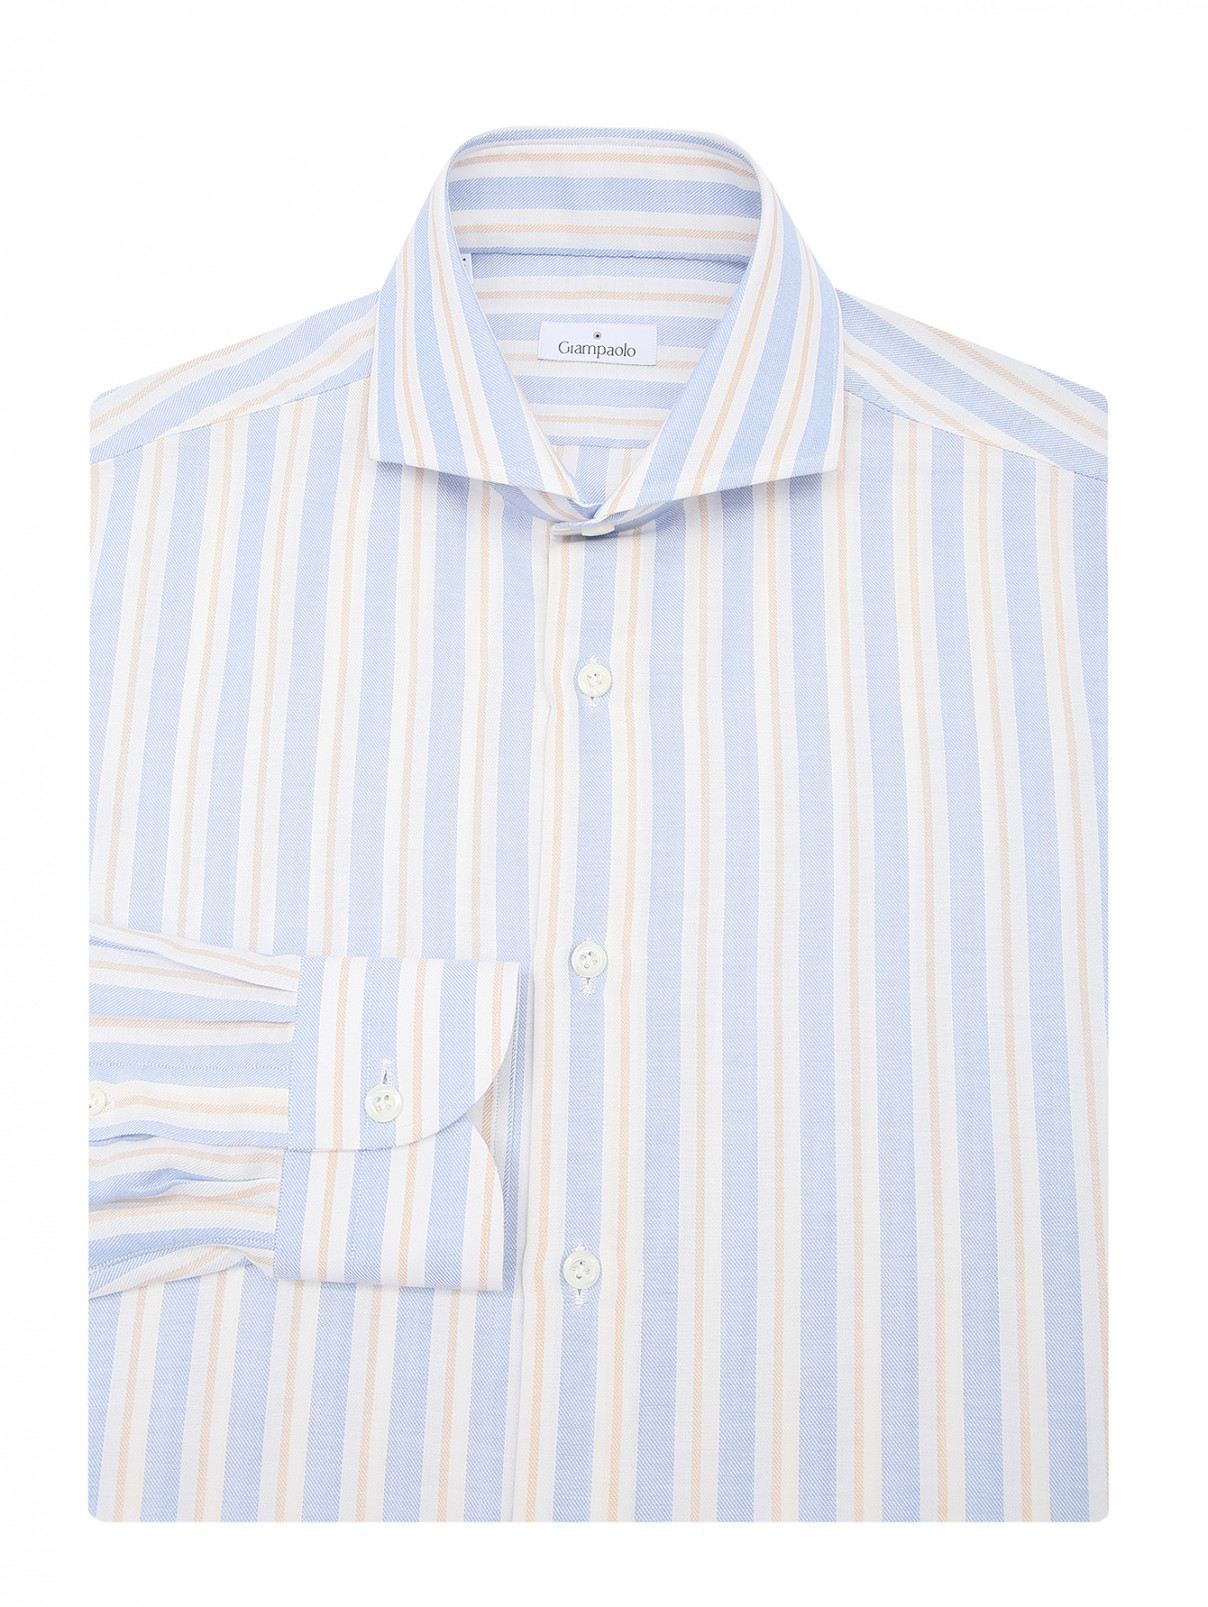 Рубашка из хлопка с узором полоска Giampaolo  –  Общий вид  – Цвет:  Синий